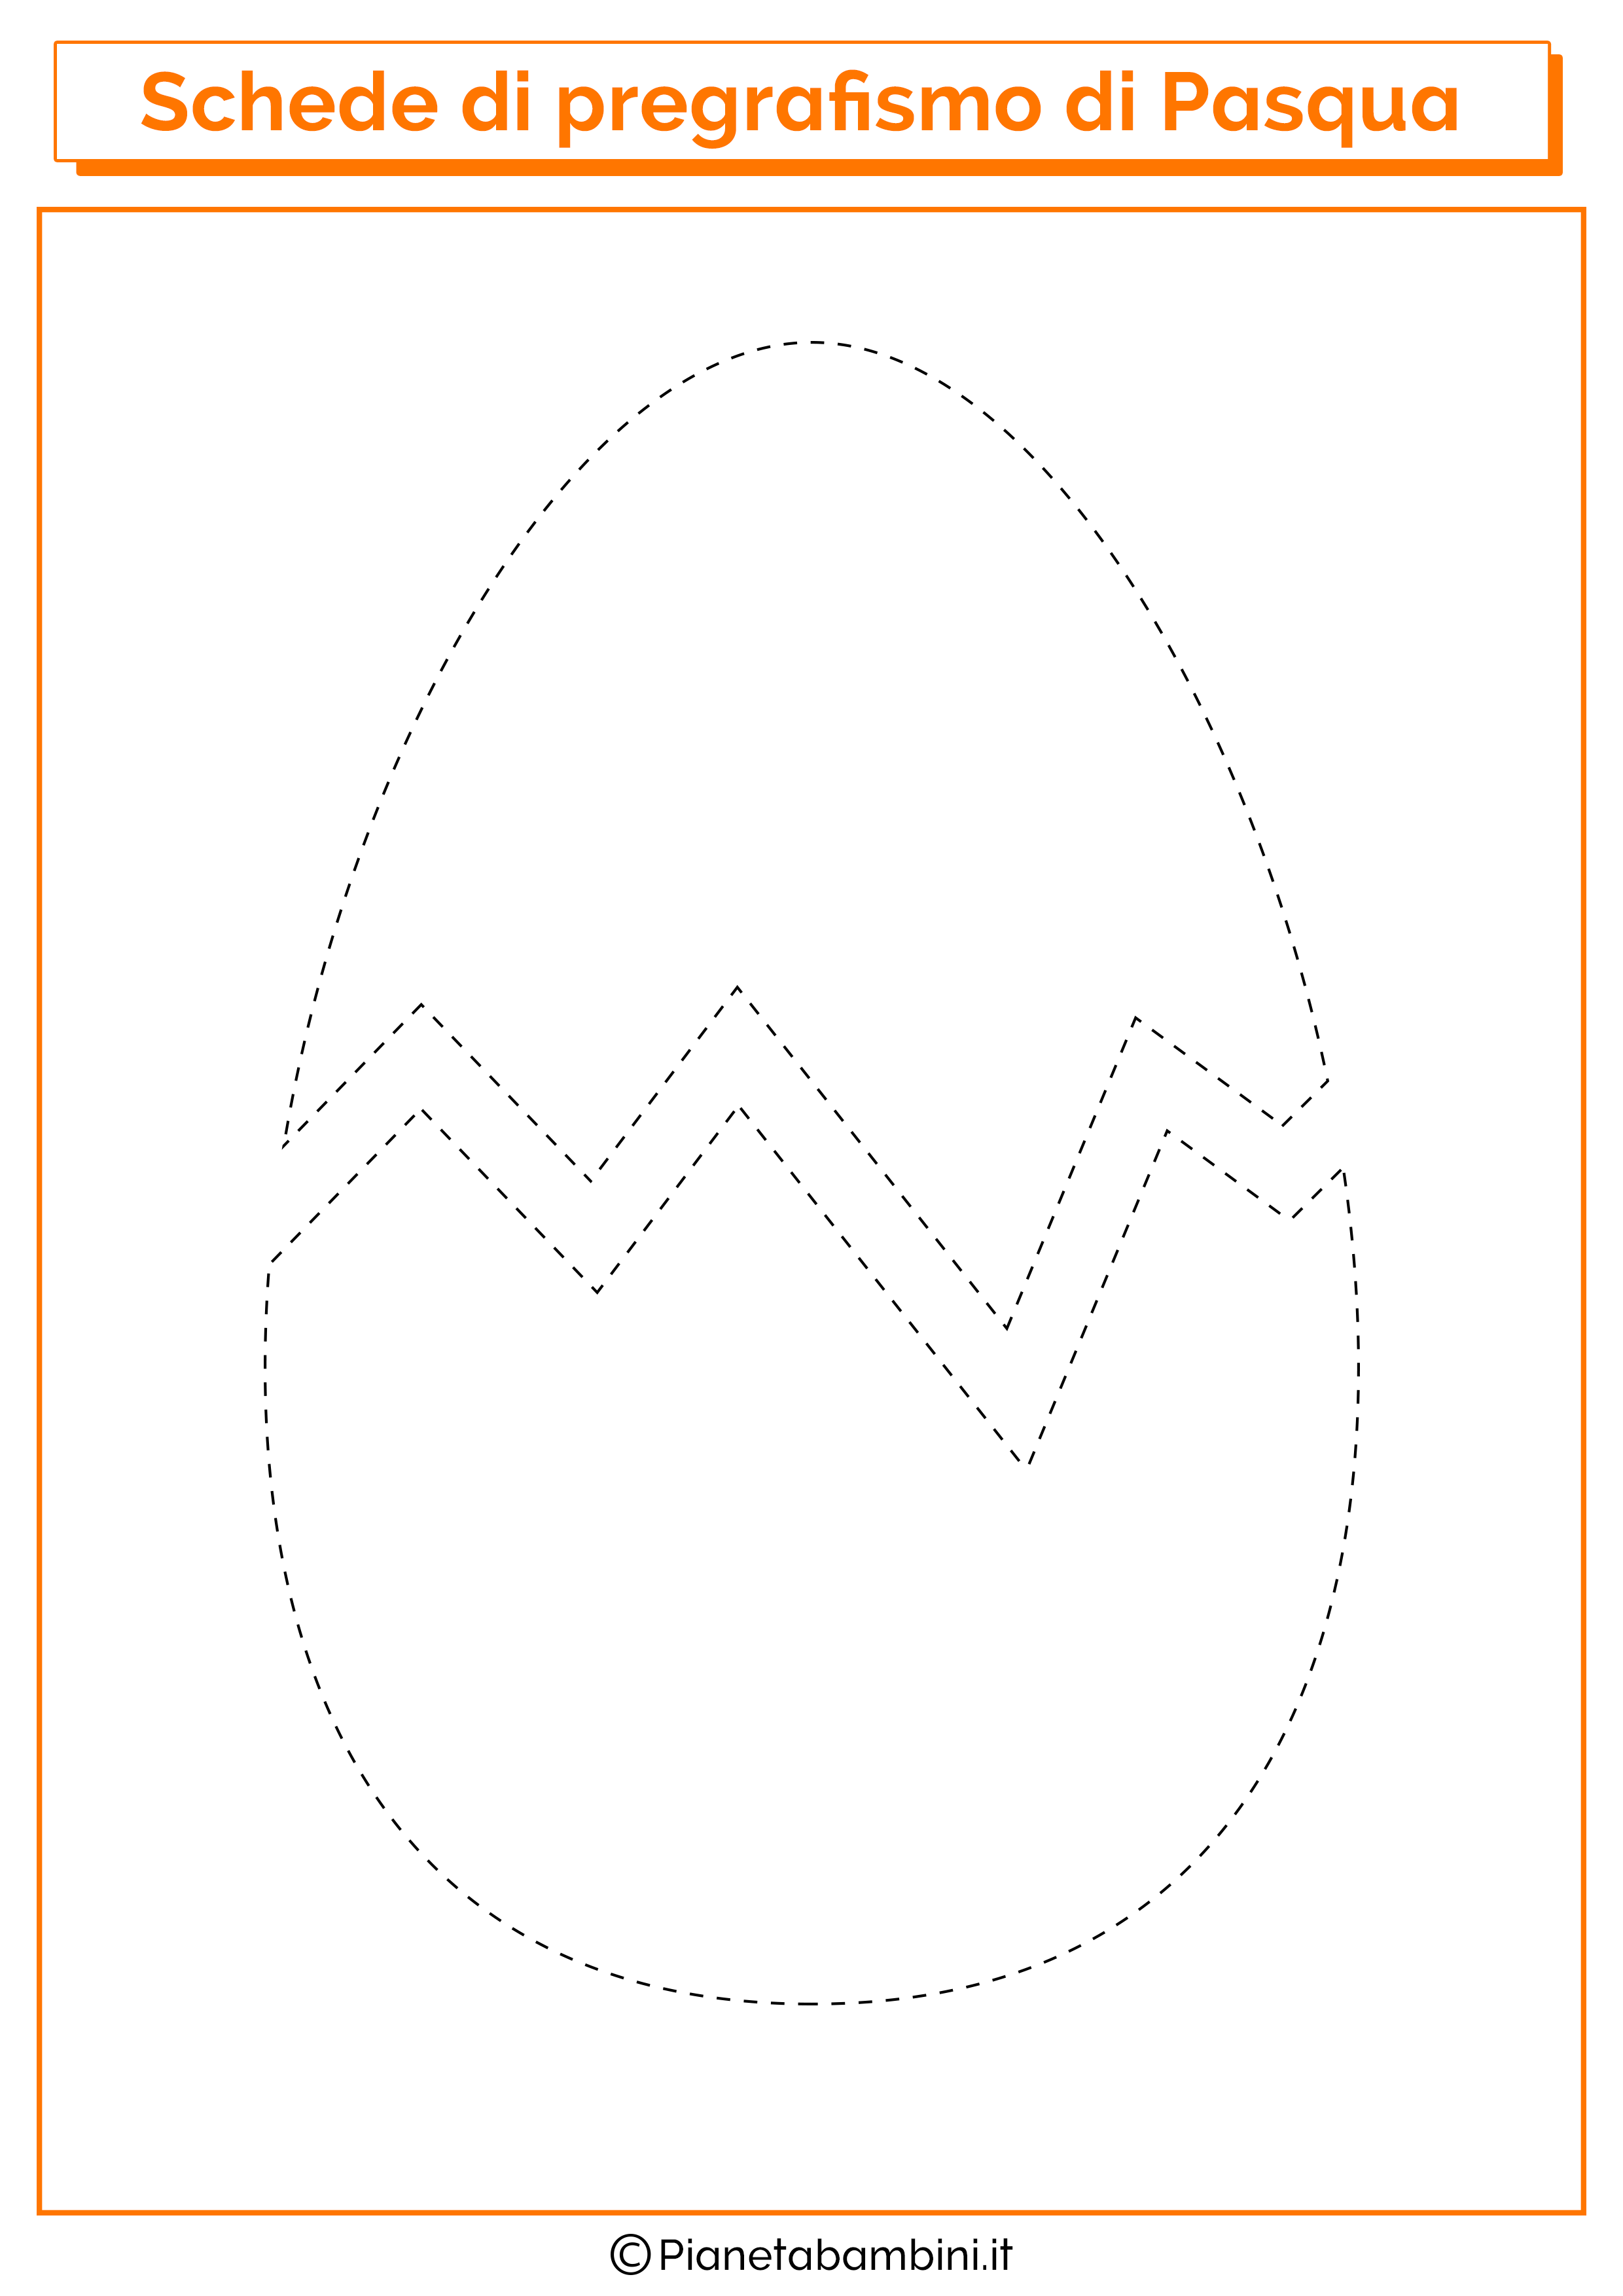 Scheda di pregrafismo di Pasqua sull'uovo rotto